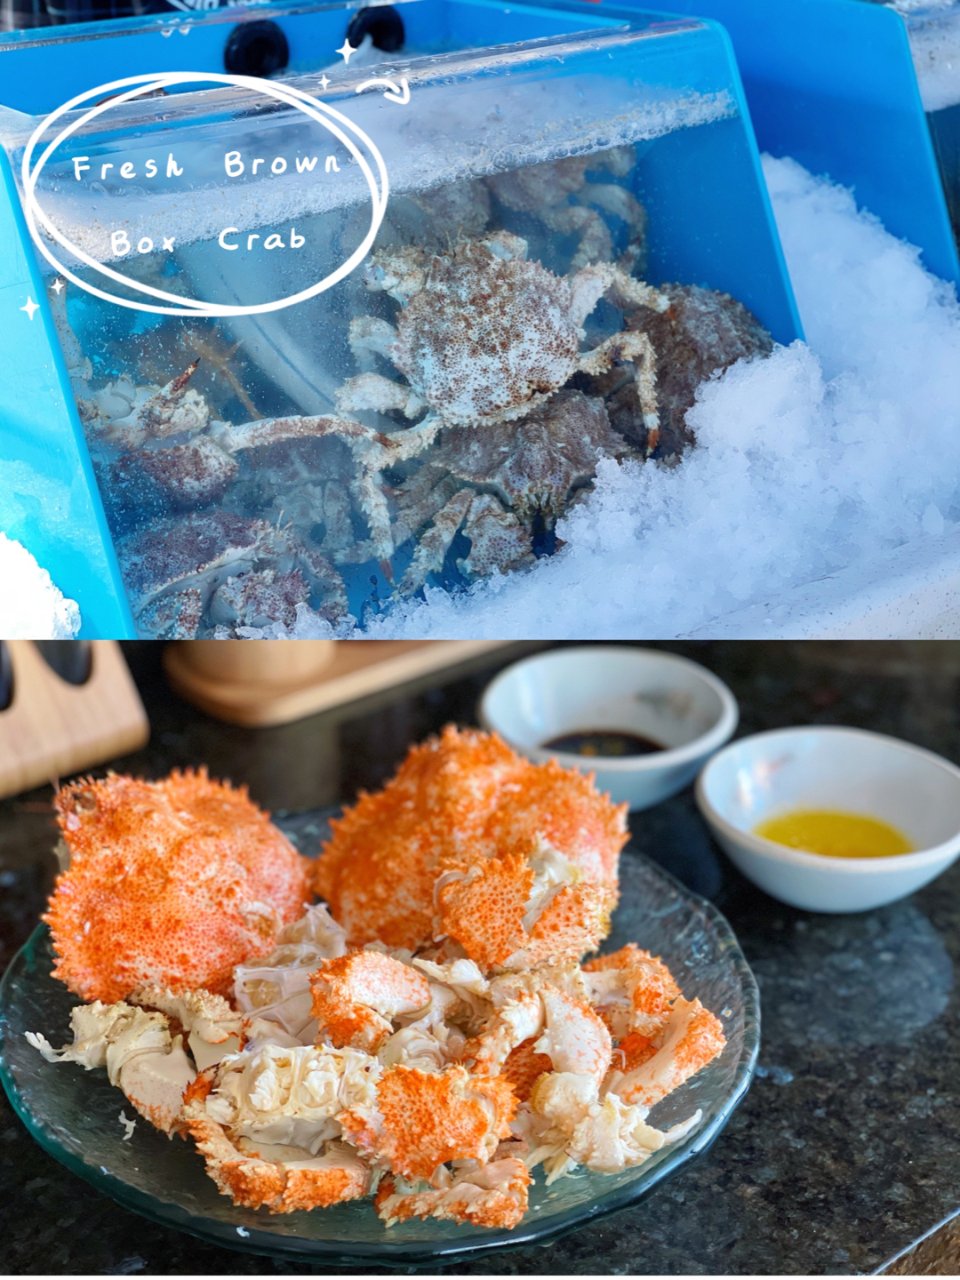 渔民新鲜海捞Box Crab，减脂也能享...